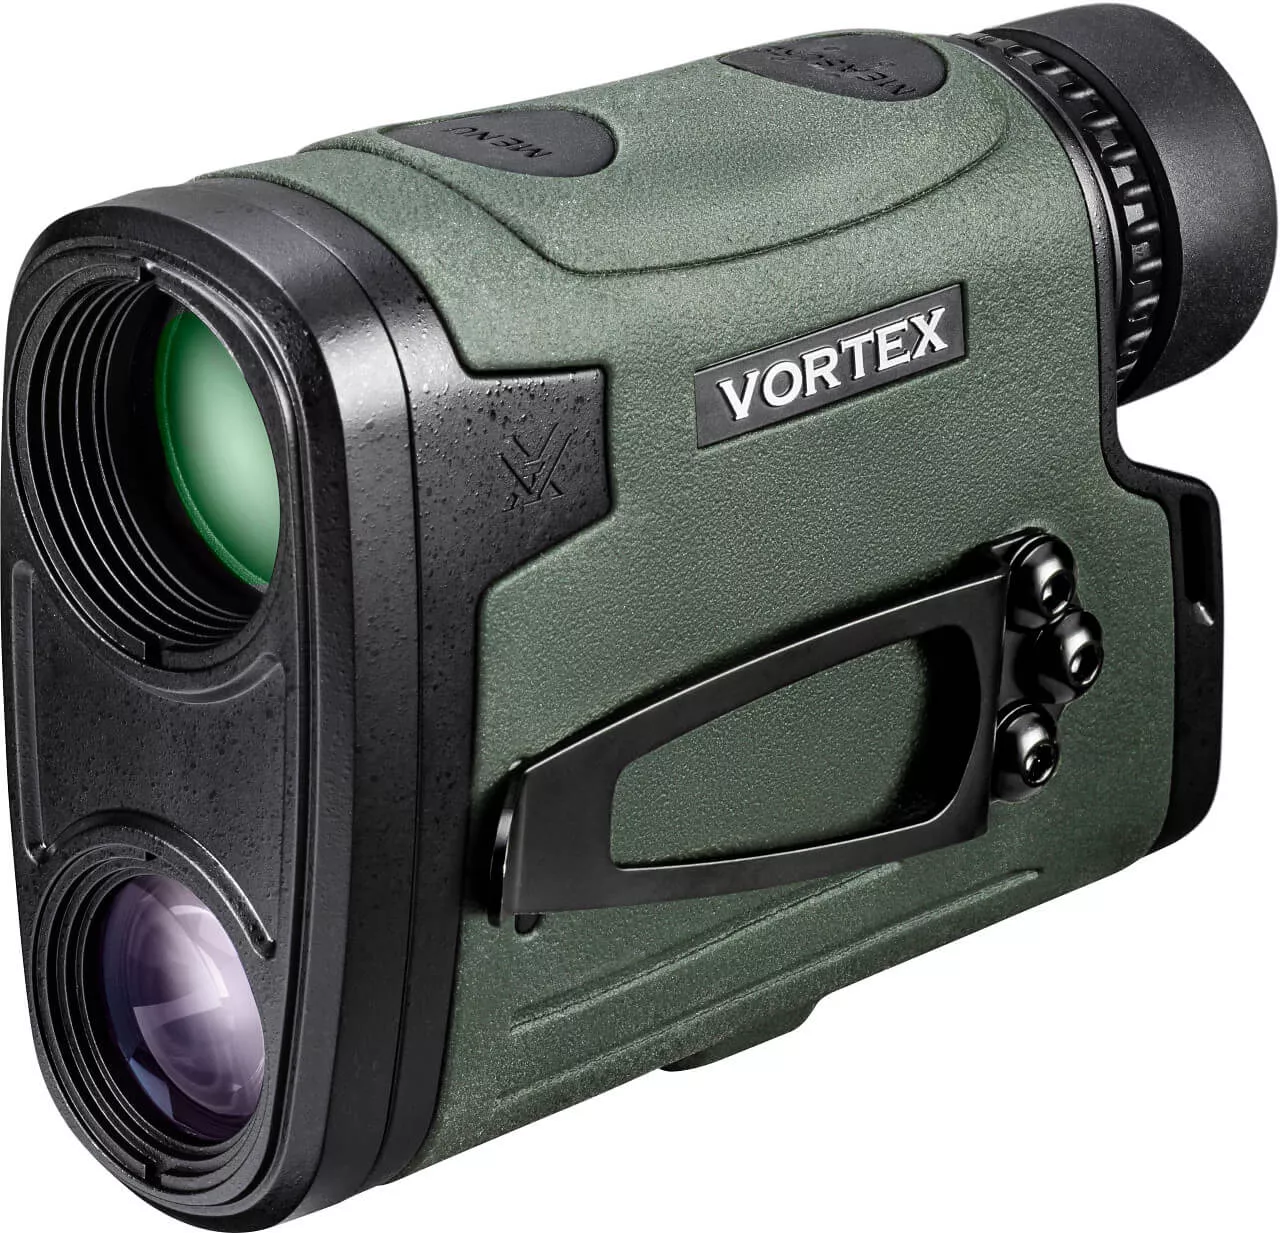 Vortex Viper HD 3000 Laserentfernungsmesser